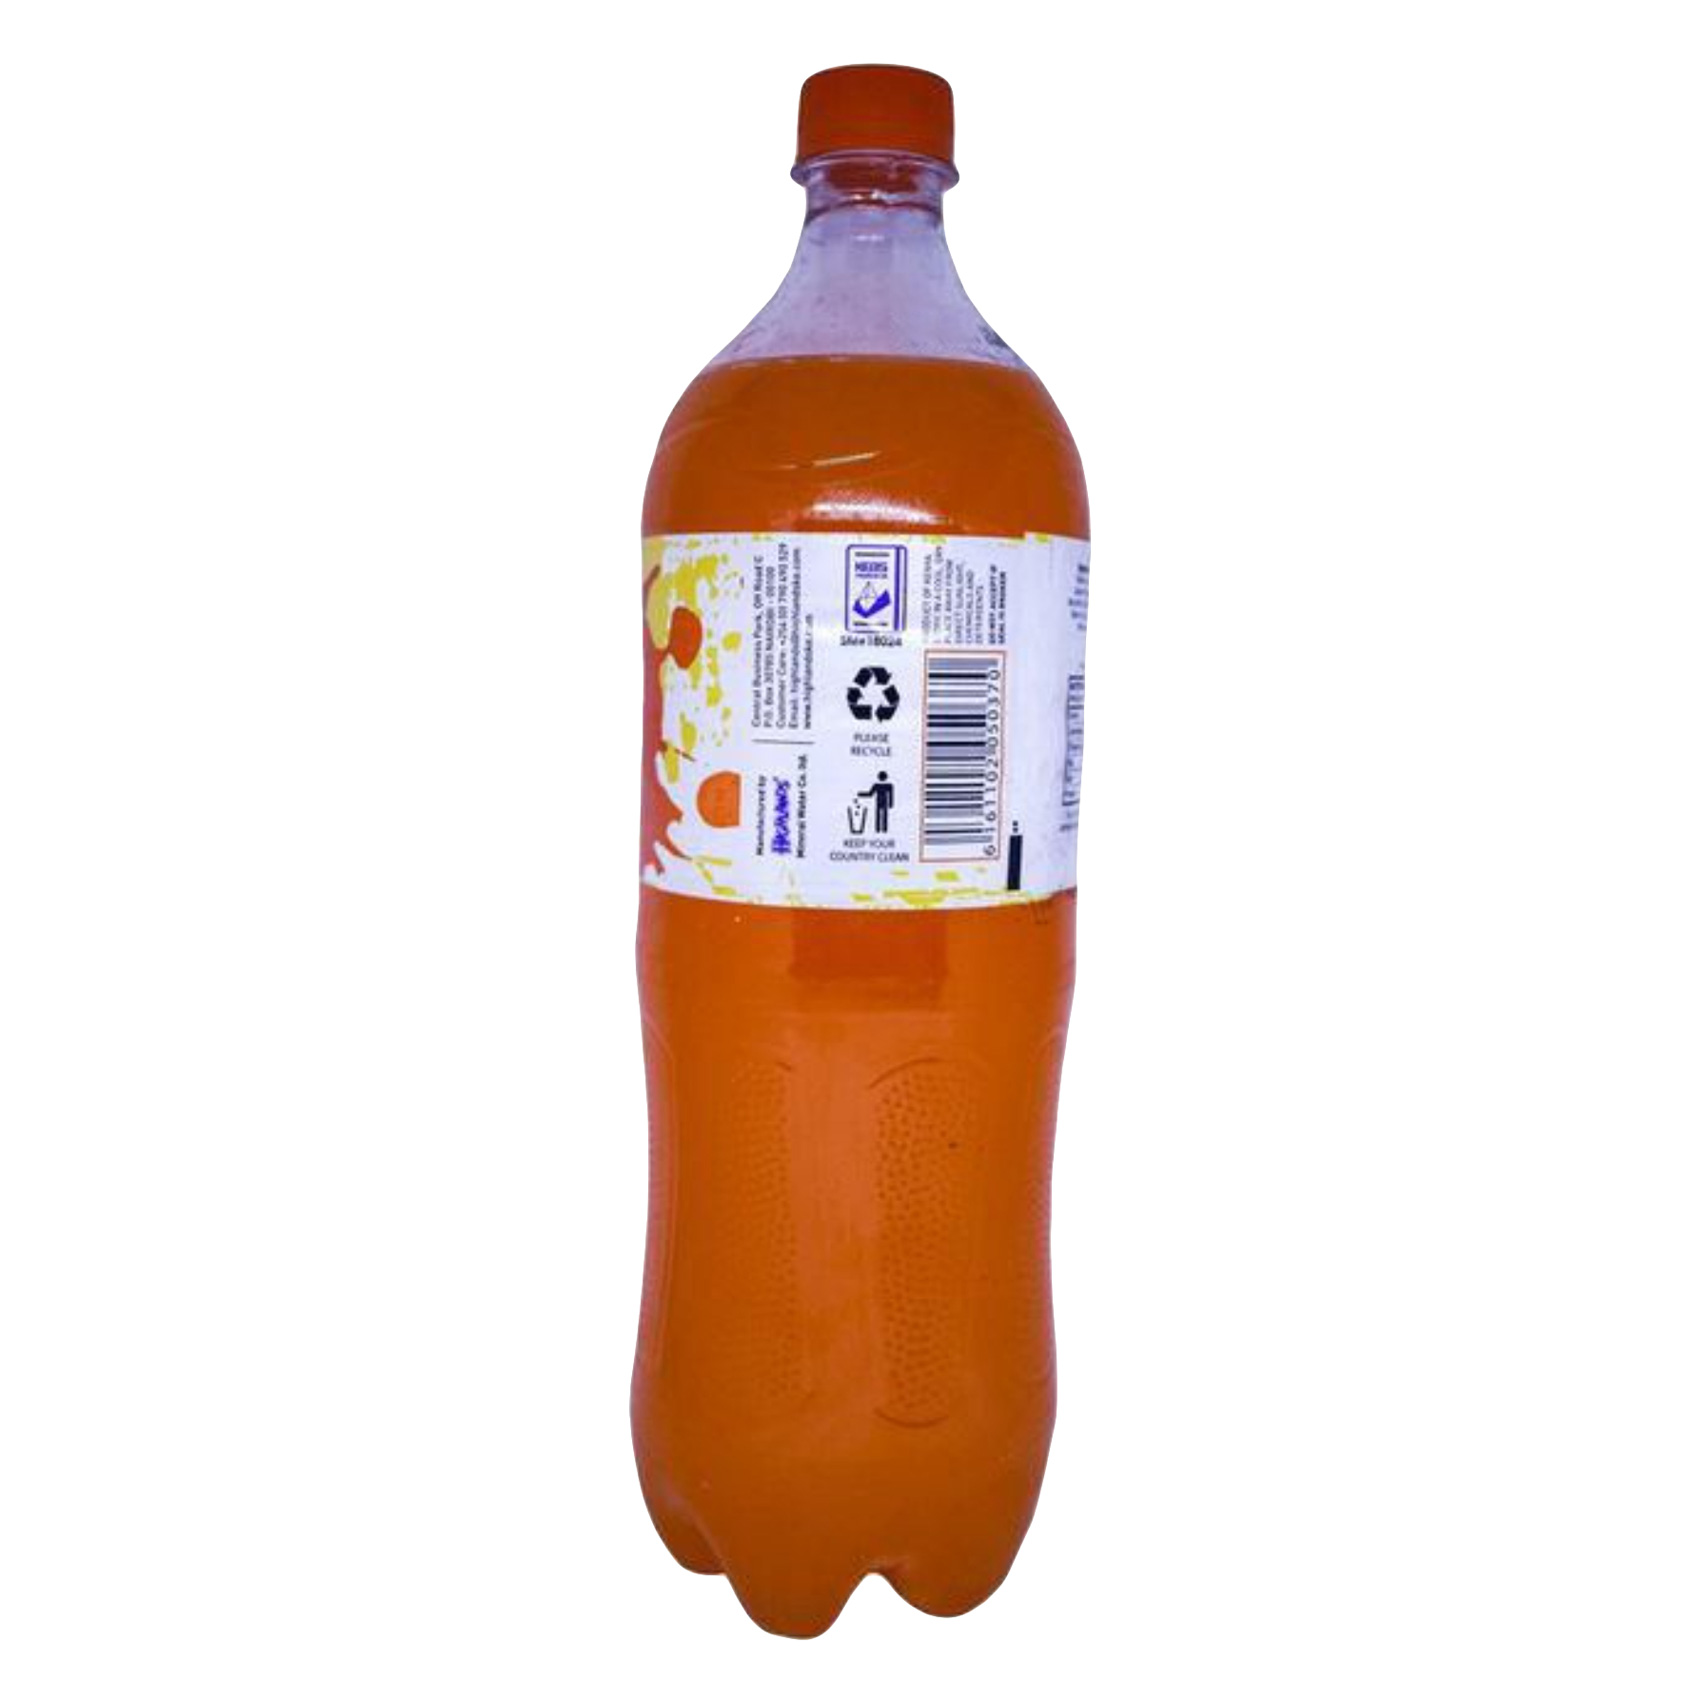 Club Orange Soda 1.25L